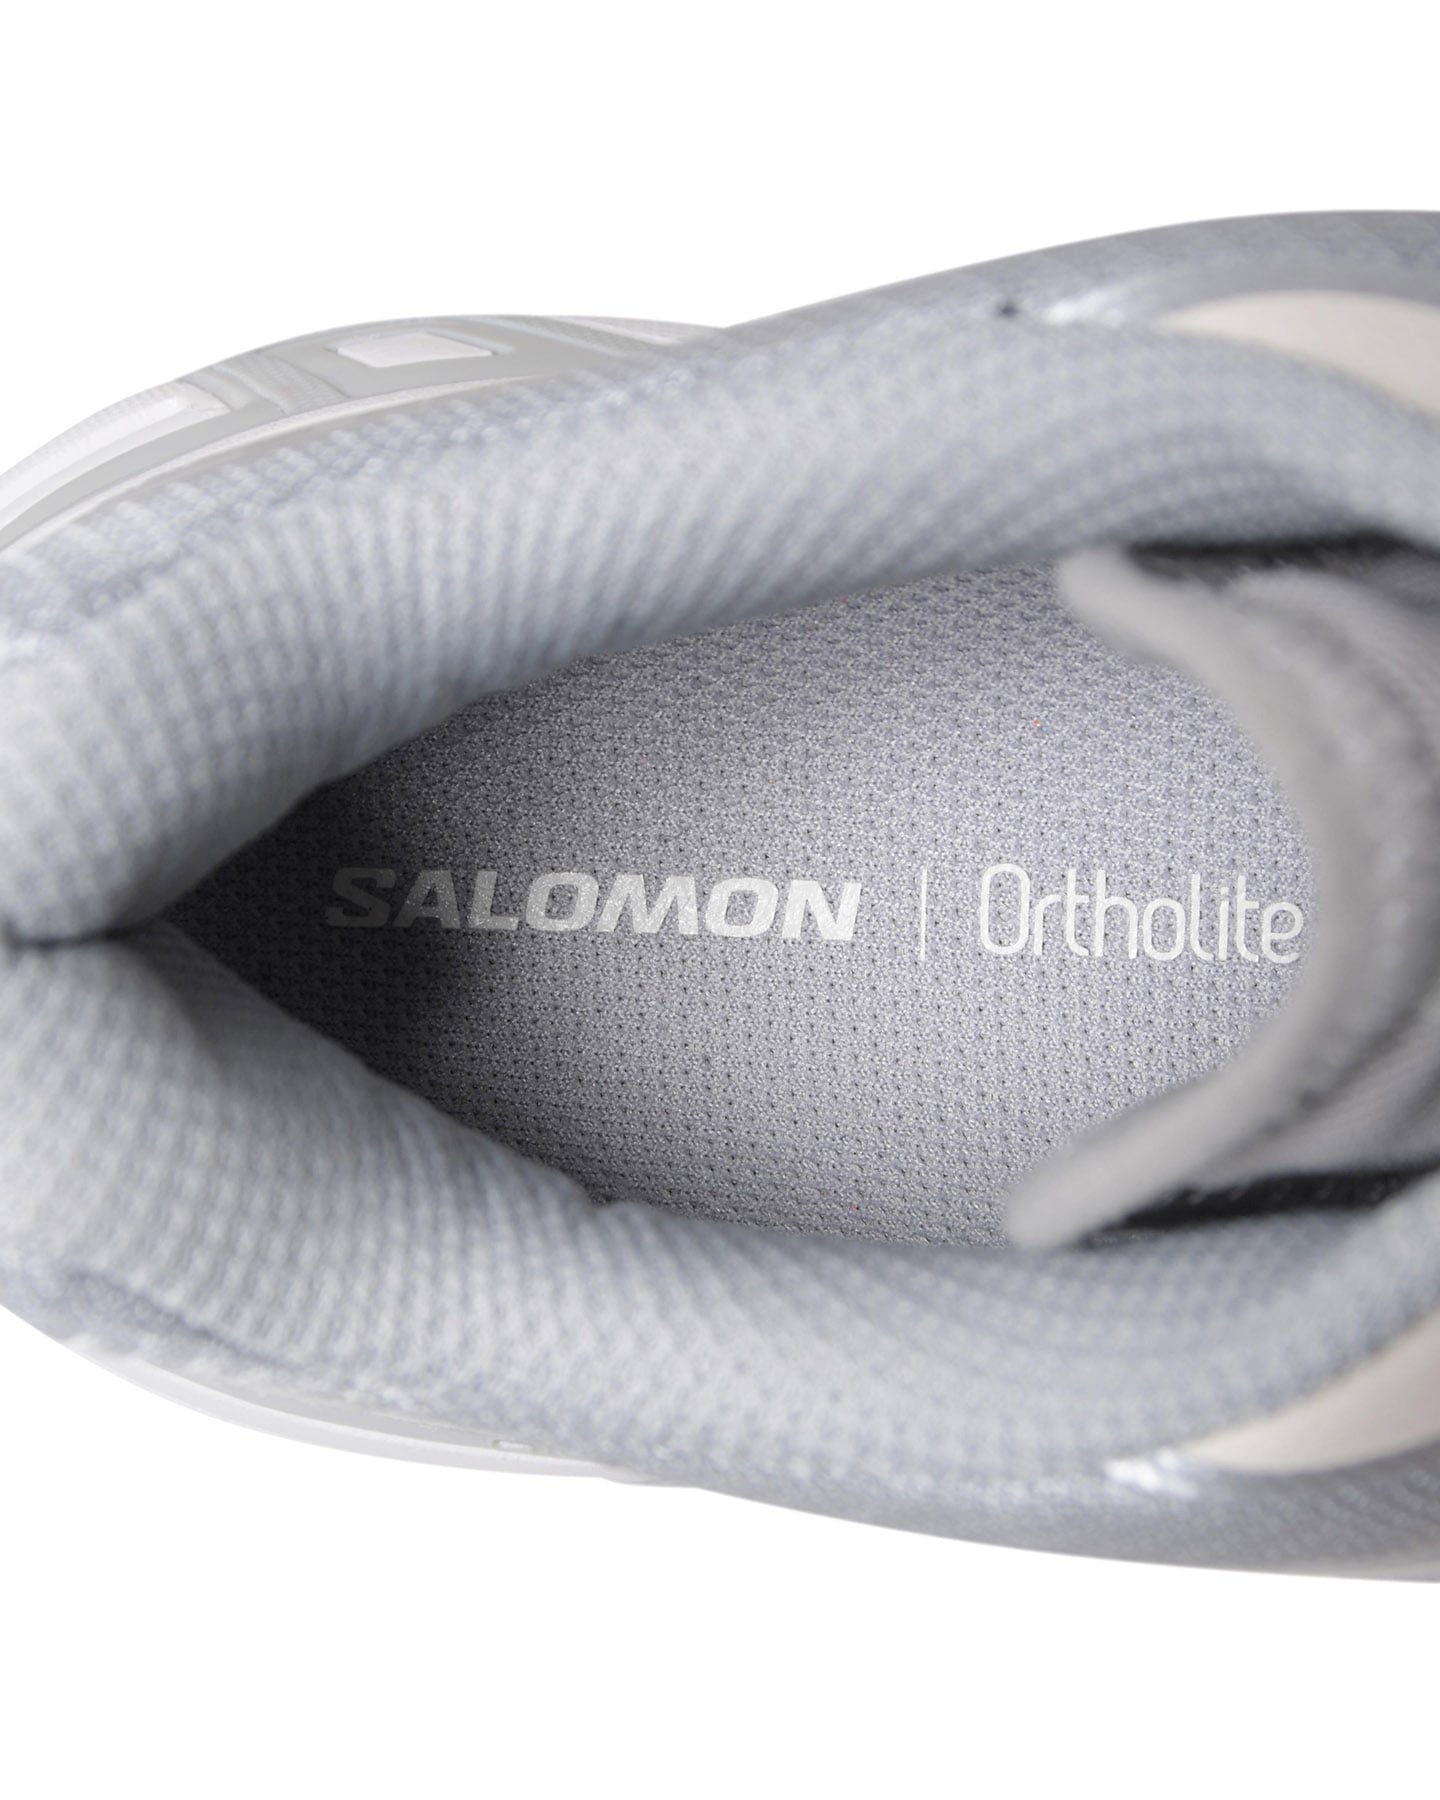 SOPH. | SALOMON XT-WINGS 2(24cm SILVER):